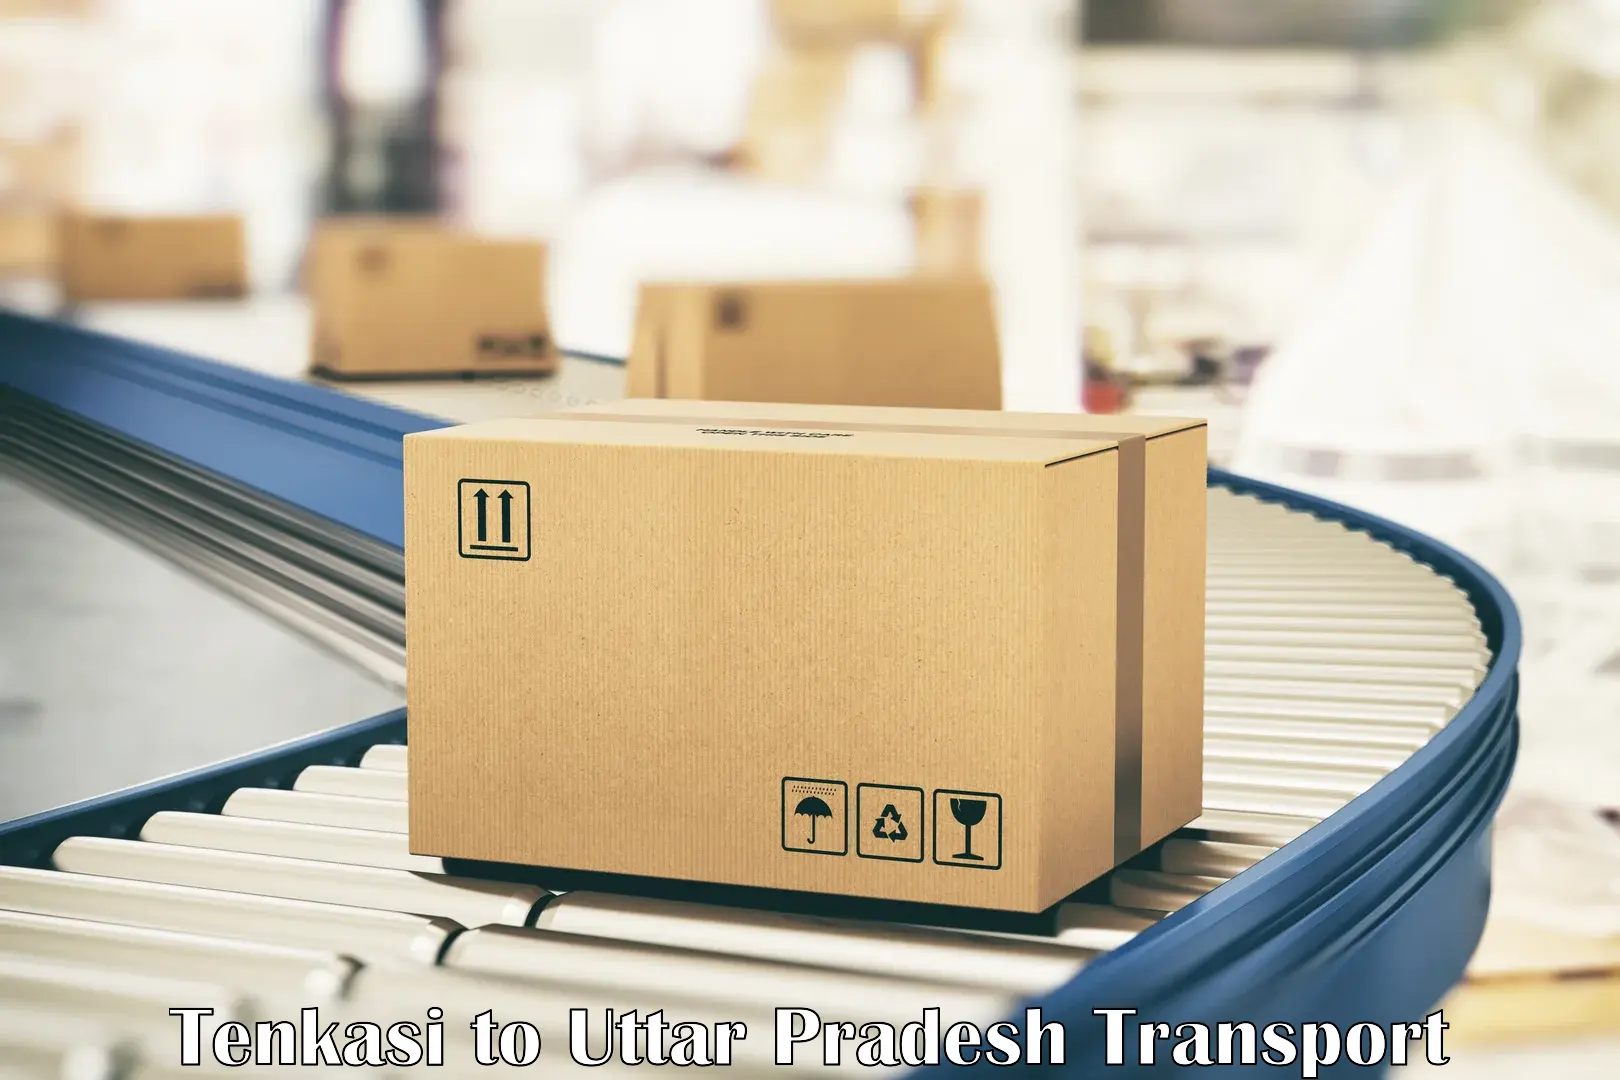 Furniture transport service Tenkasi to Babrala